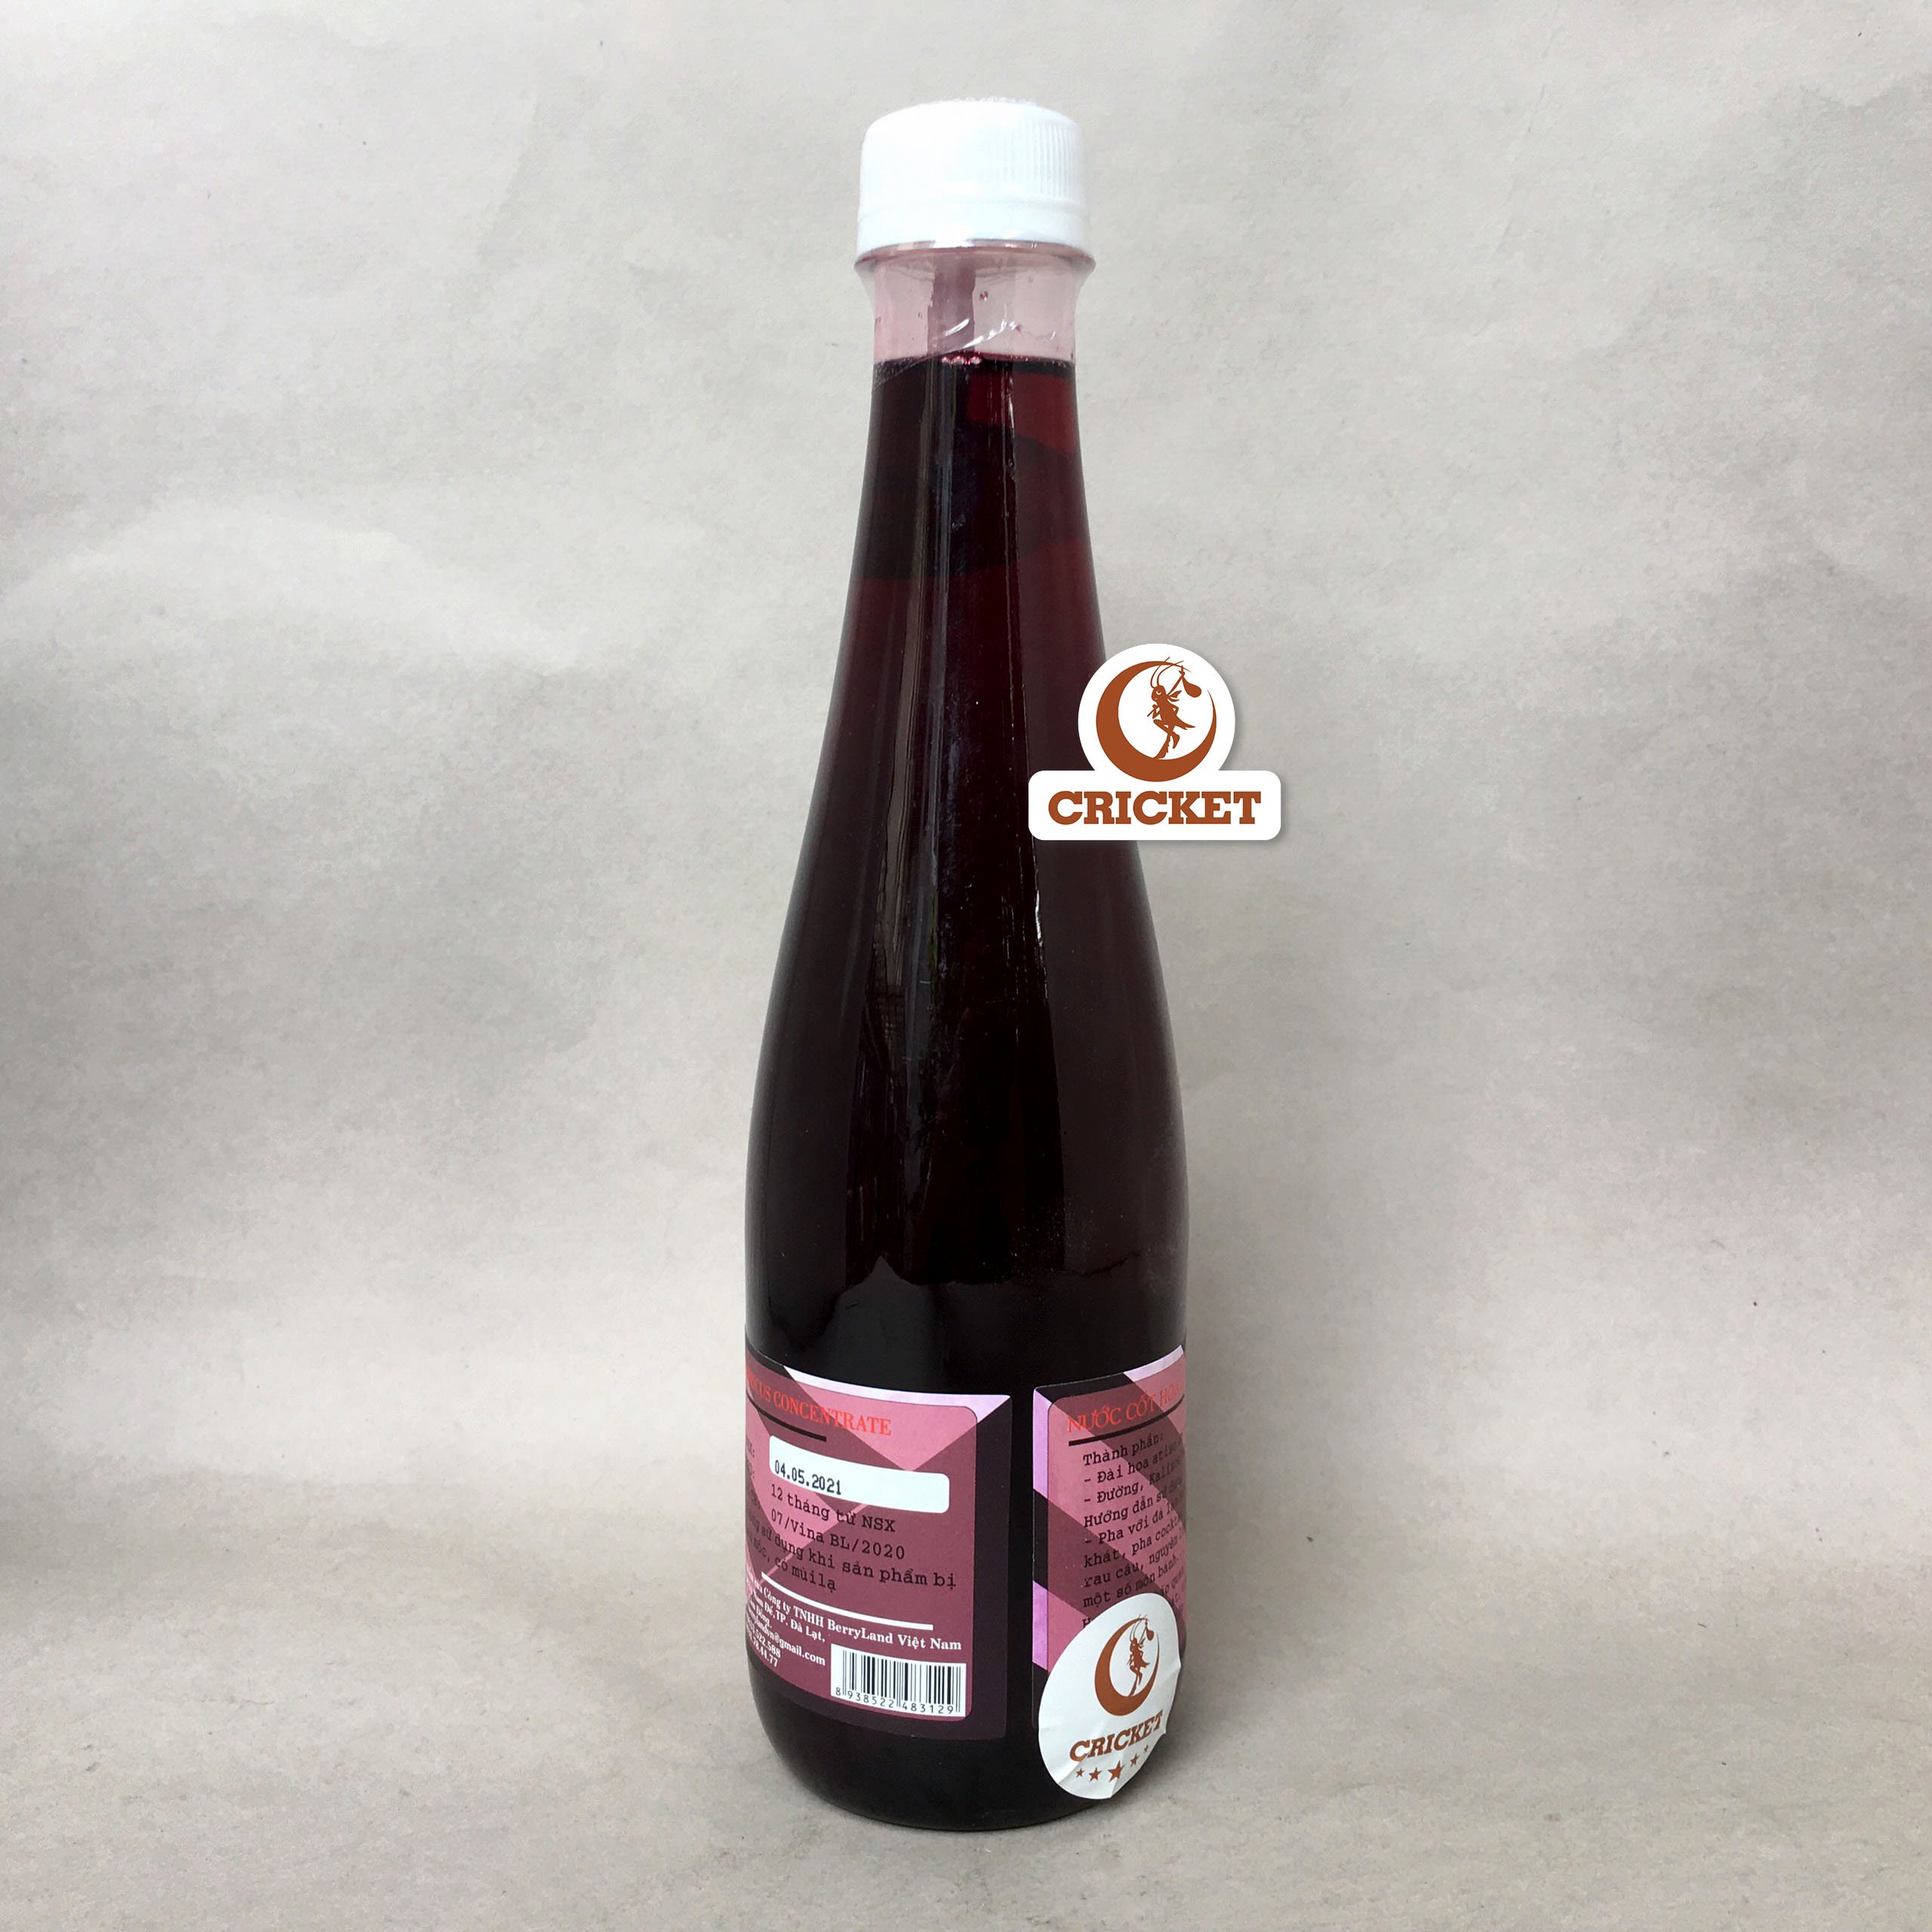 Nước cốt hoa Atiso đỏ BerryLand - Đặc sản Đà Lạt - Nước giải khát vị chua ngọt, 100% từ...